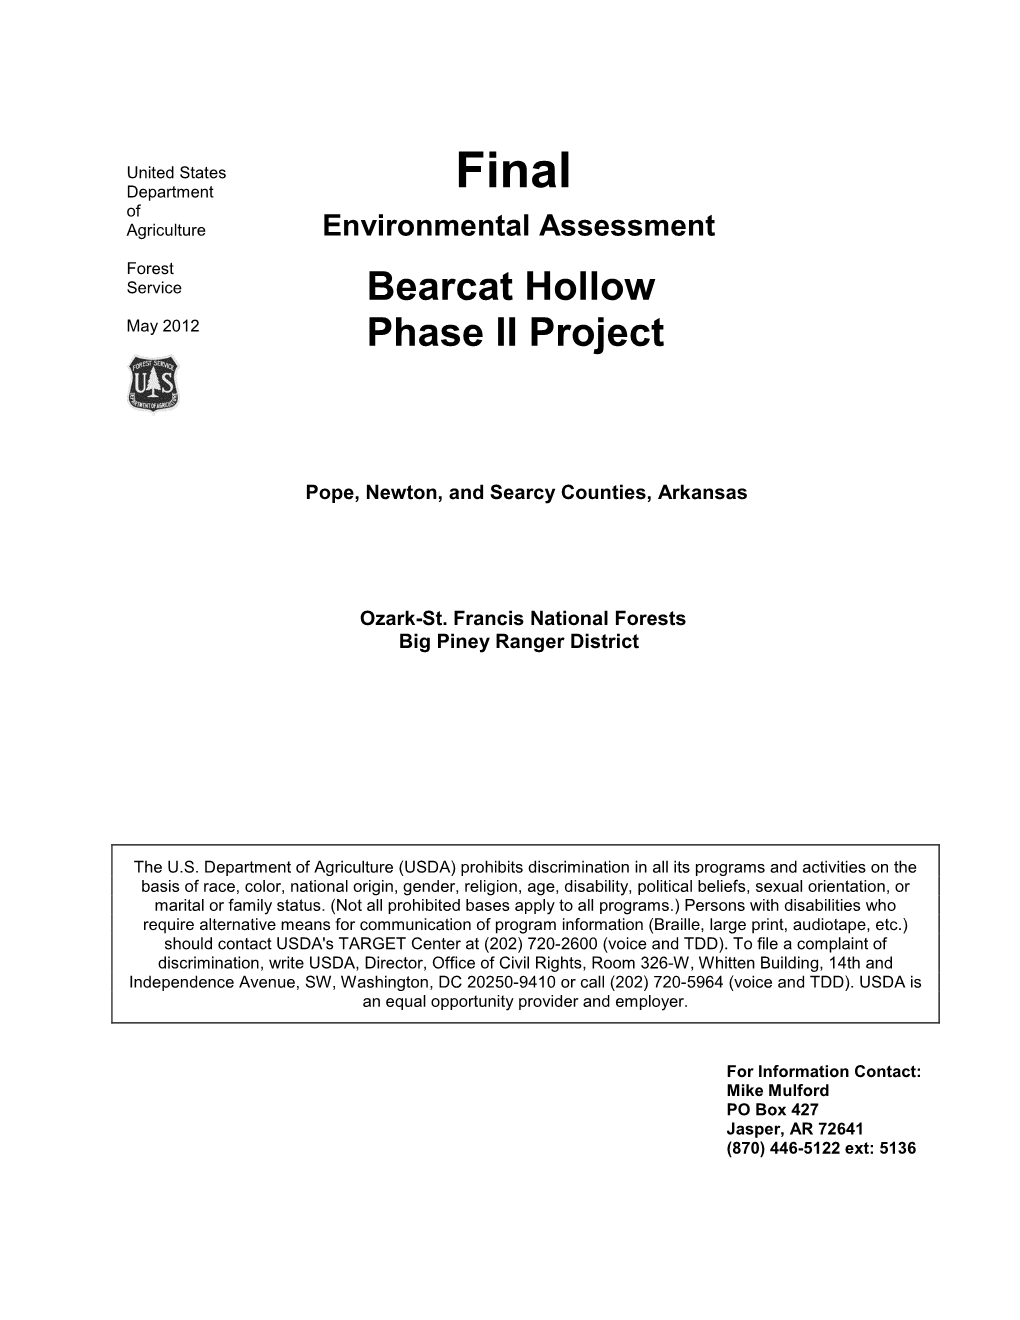 Final Environmental Assessment Appendix G